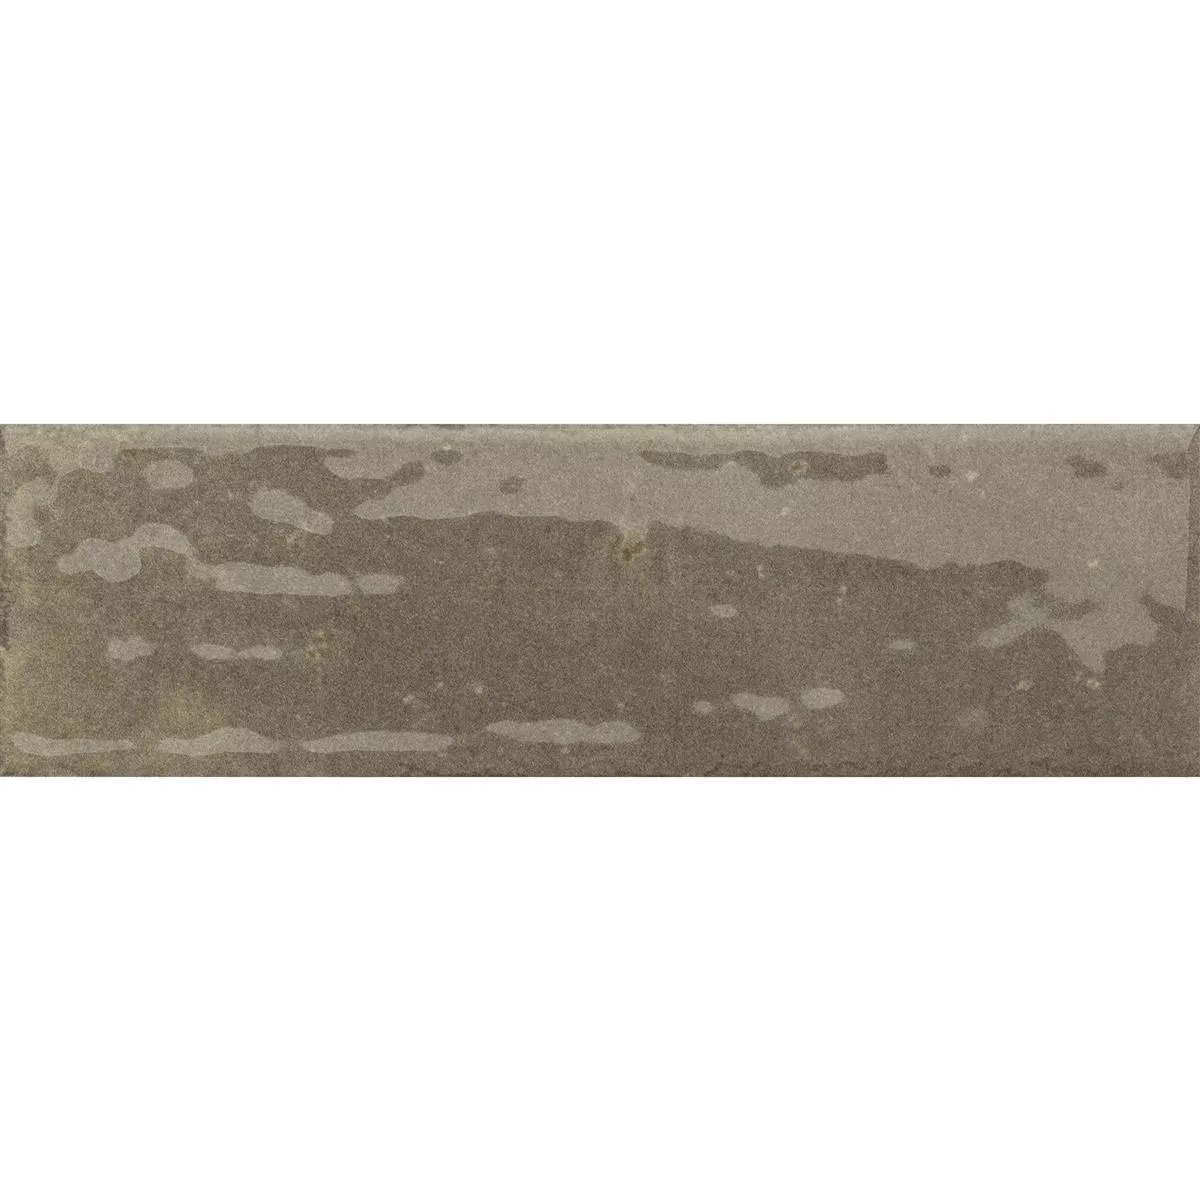 Próbka Płytki Ścienne Arosa Błyszczący Karbowany Brązowy 6x25cm